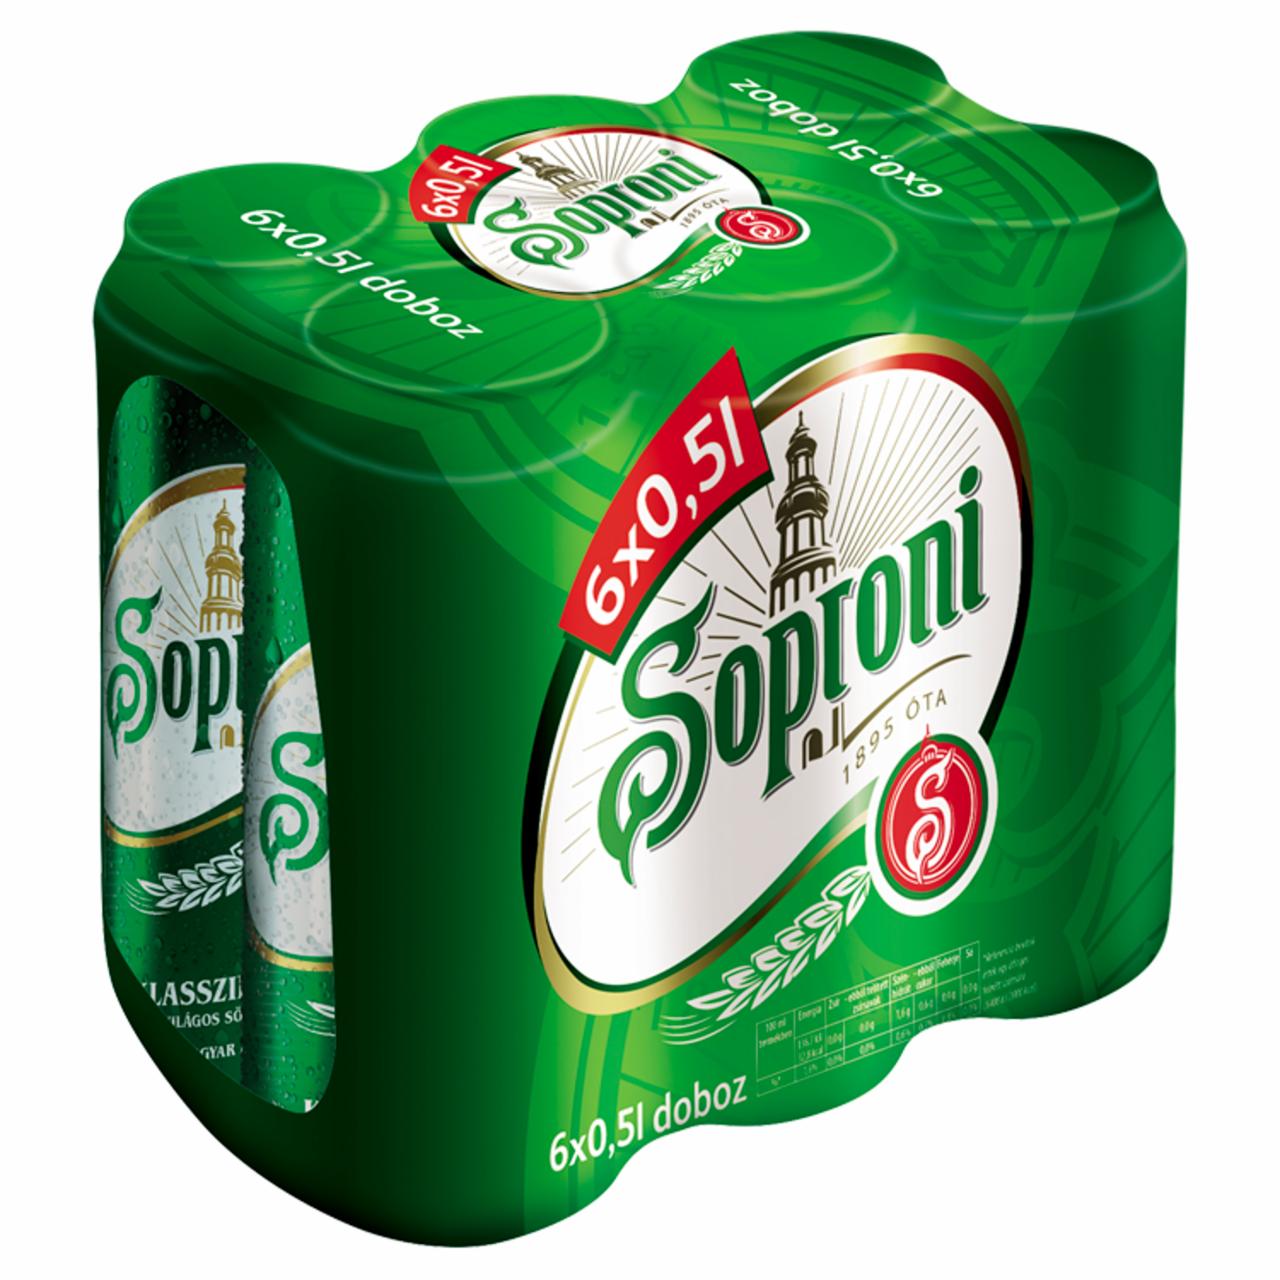 Képek - Soproni Klasszikus világos sör 4,5% 6 x 0,5 l doboz